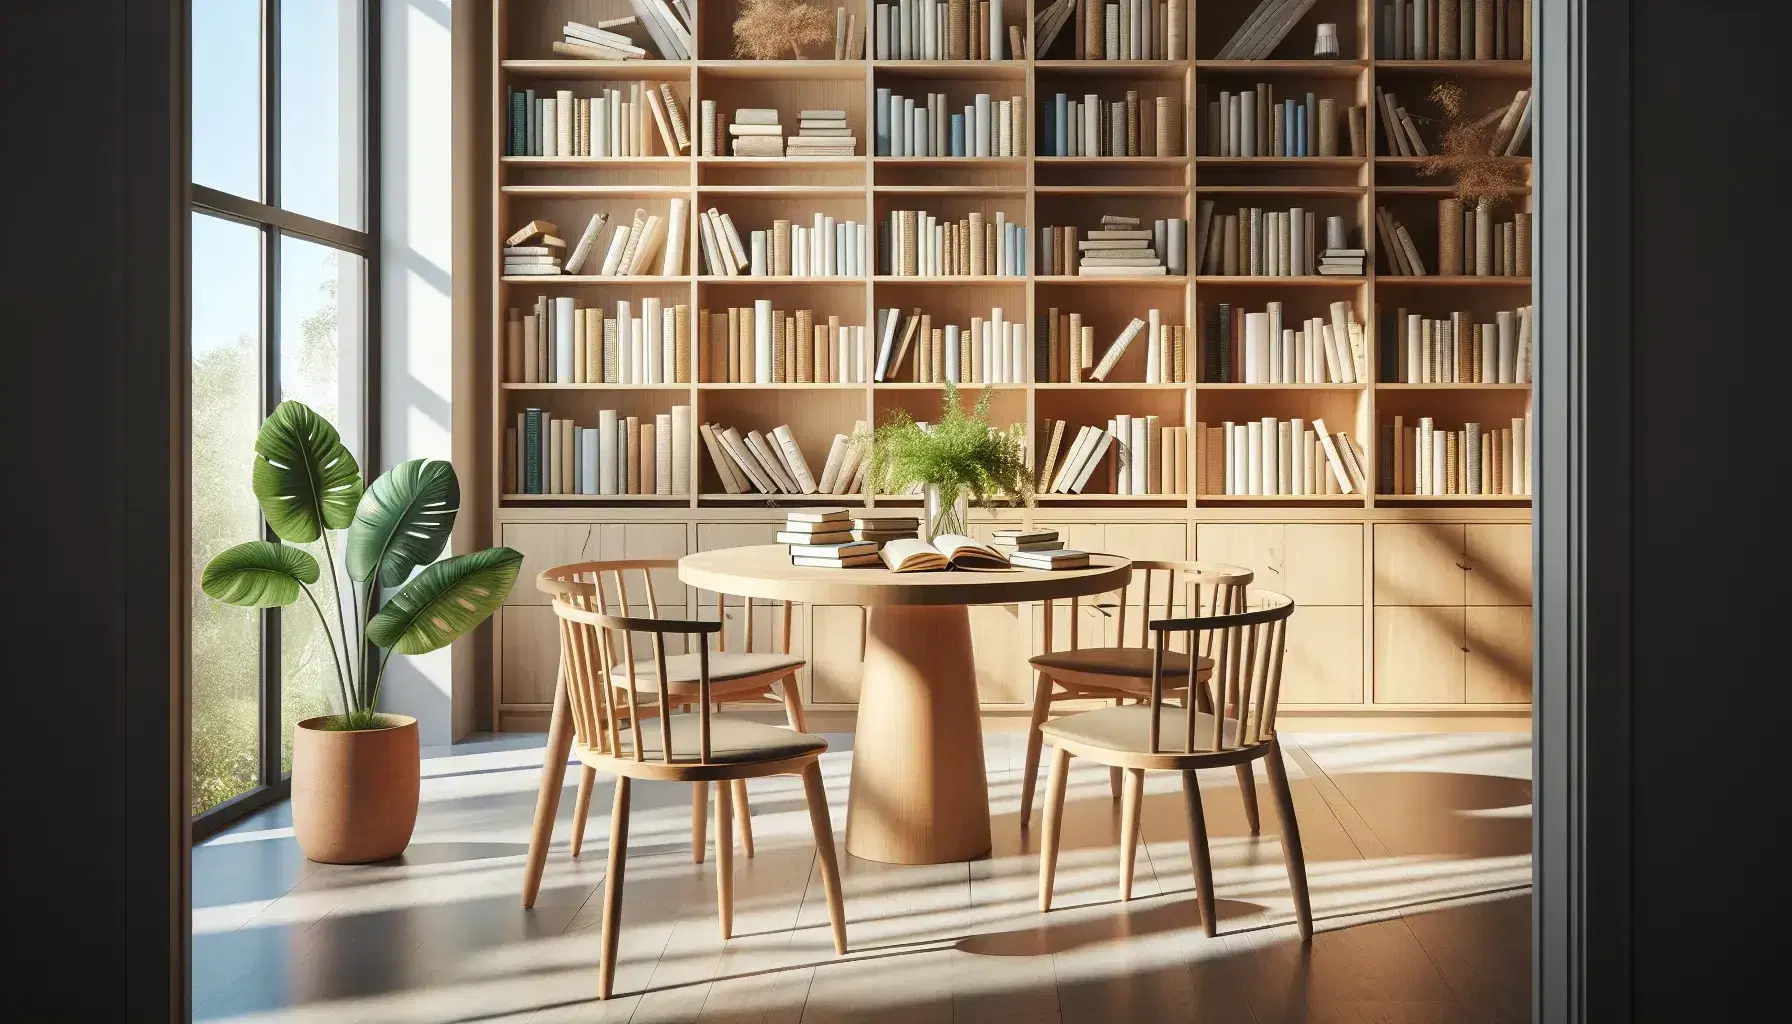 Biblioteca moderna y luminosa con estanterías de madera clara llenas de libros, mesa redonda central con sillas a juego y planta verde en primer plano.